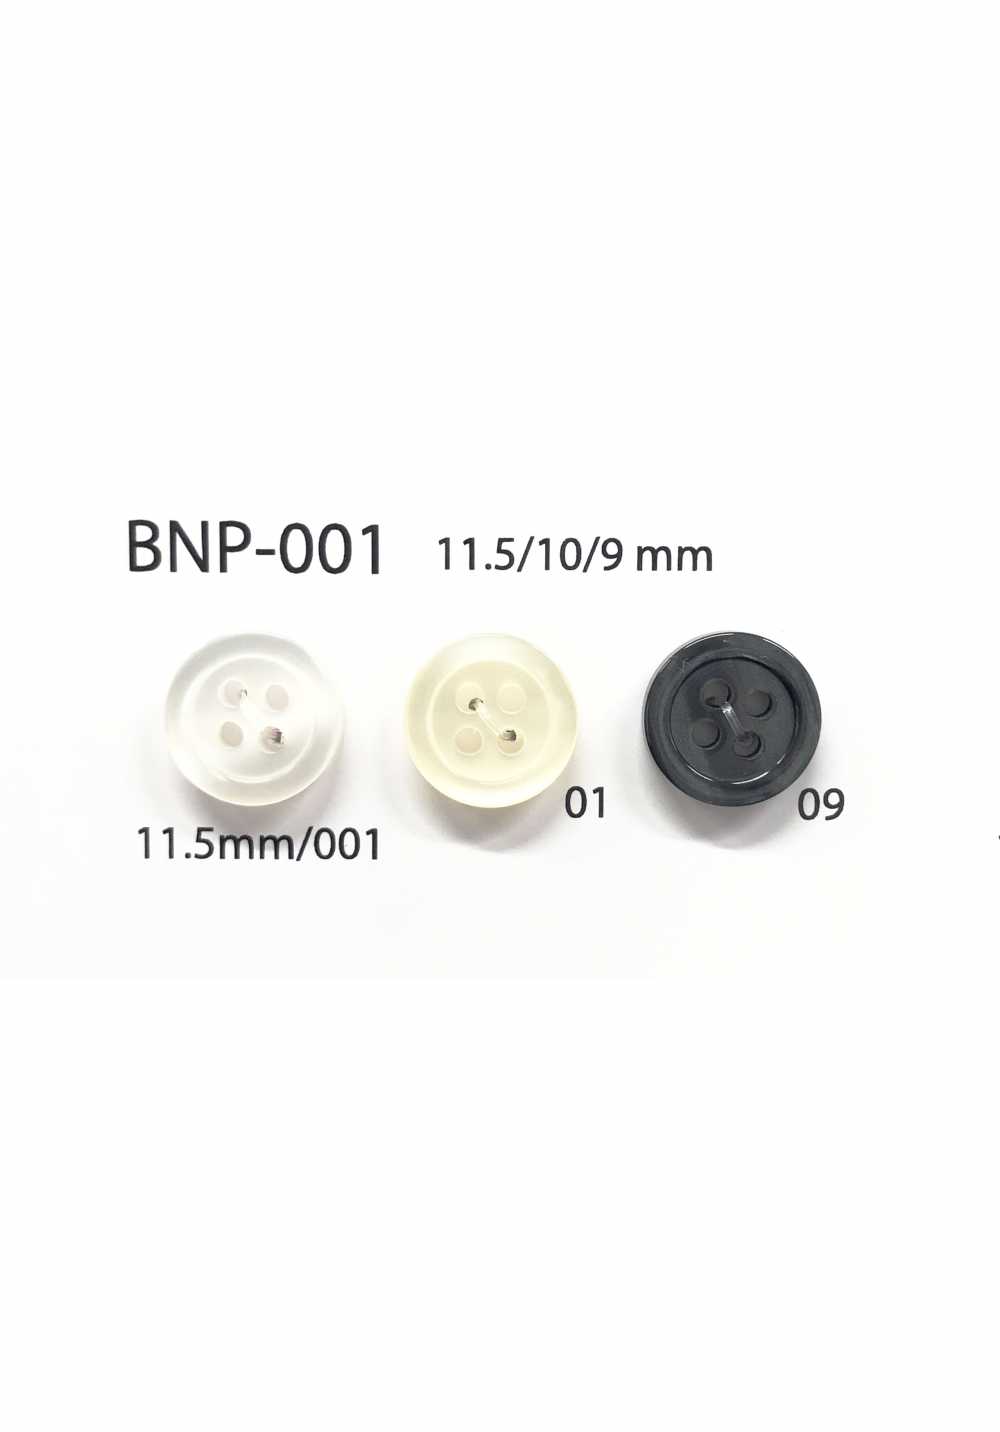 BNP-001 Botão Biopoliester 4 Furos IRIS